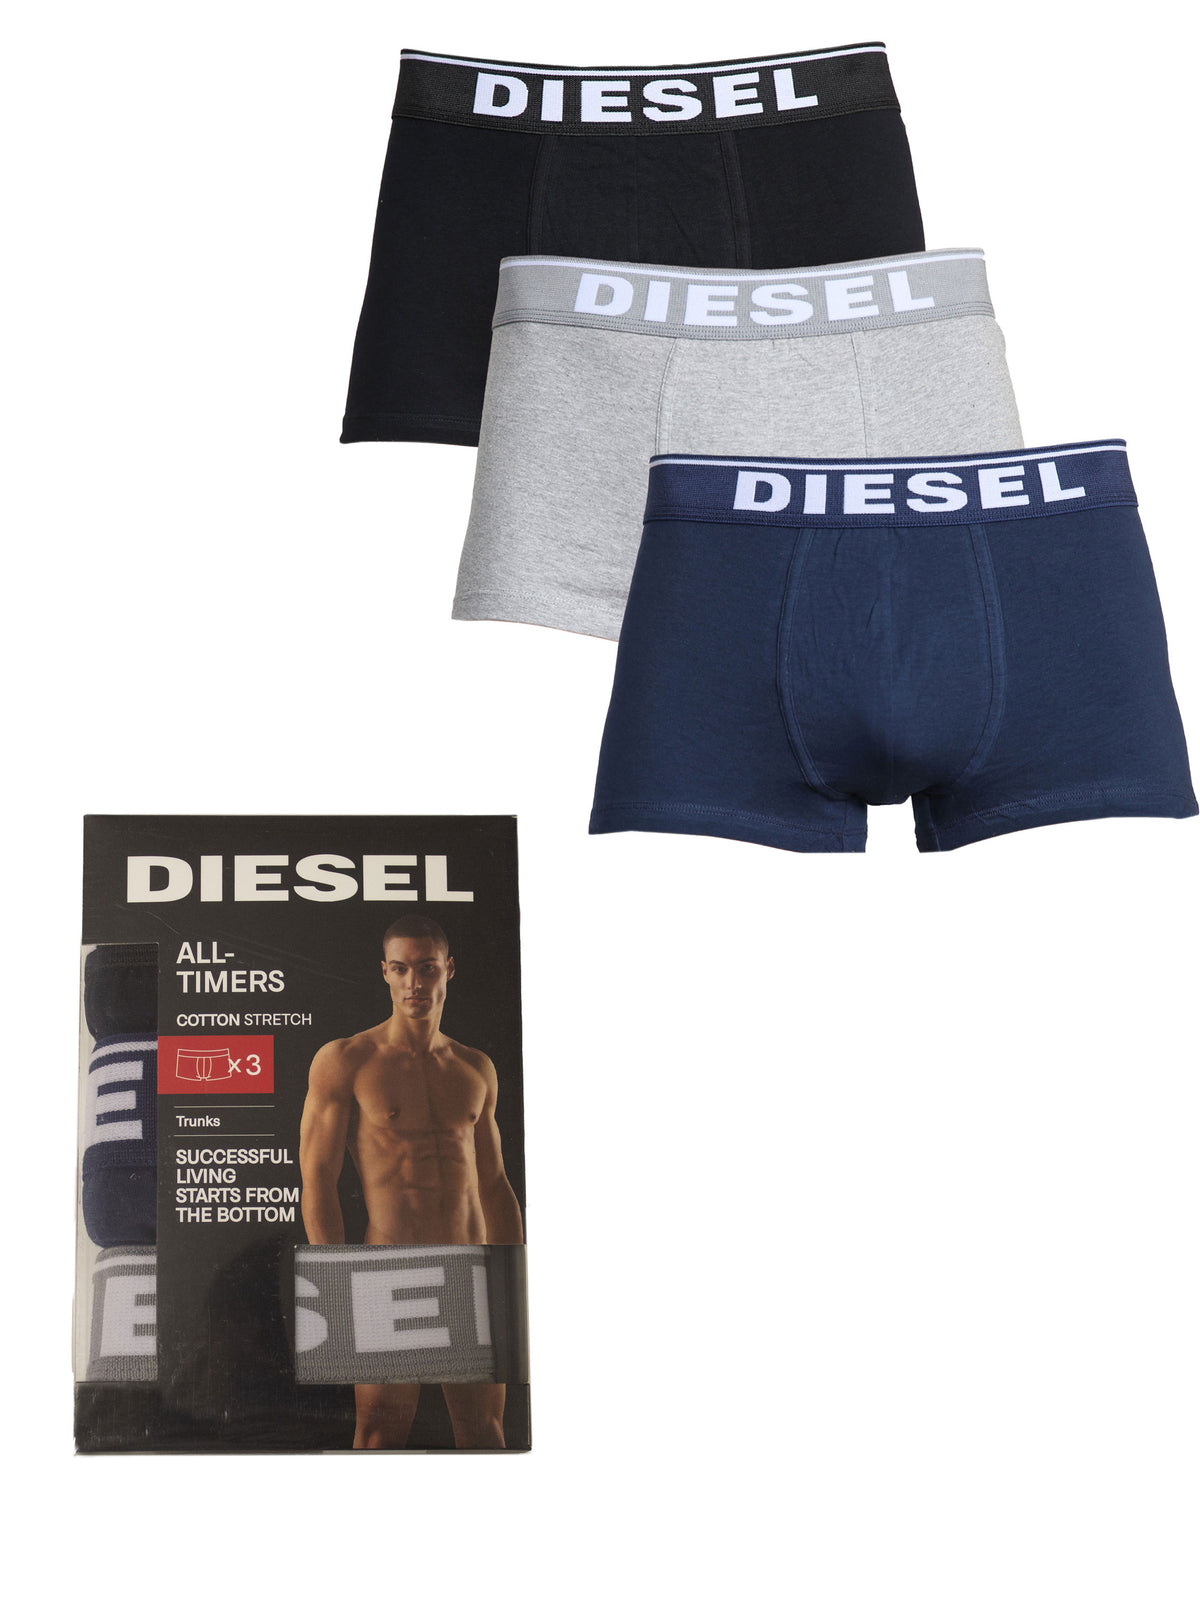 DIESEL_BXRS ALL-3PK Diesel | Mens All-Timers Boxers (3 Pack) DIESEL RAWDENIM